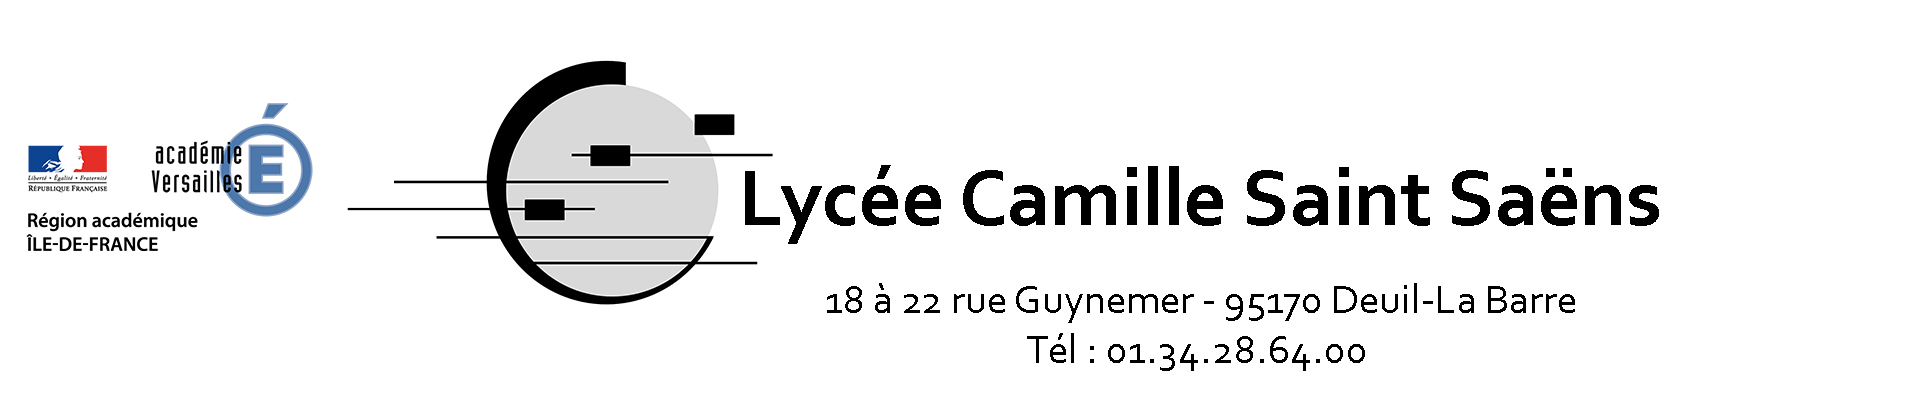 Lycée Camille Saint-Saens